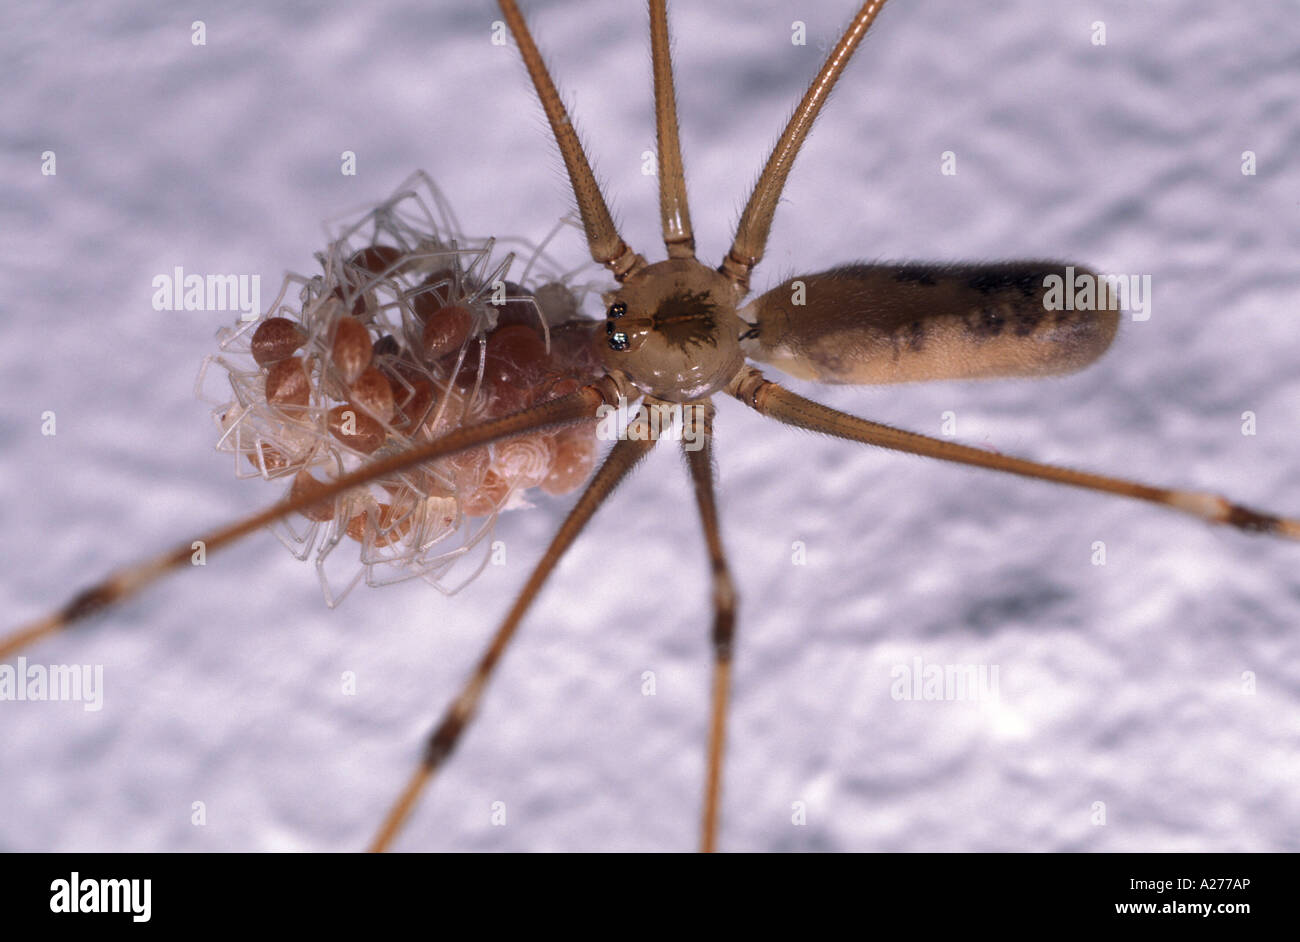 Daddy-Long-Legs (Pholcus phalangioides araignée), femme avec des jeunes araignées Banque D'Images